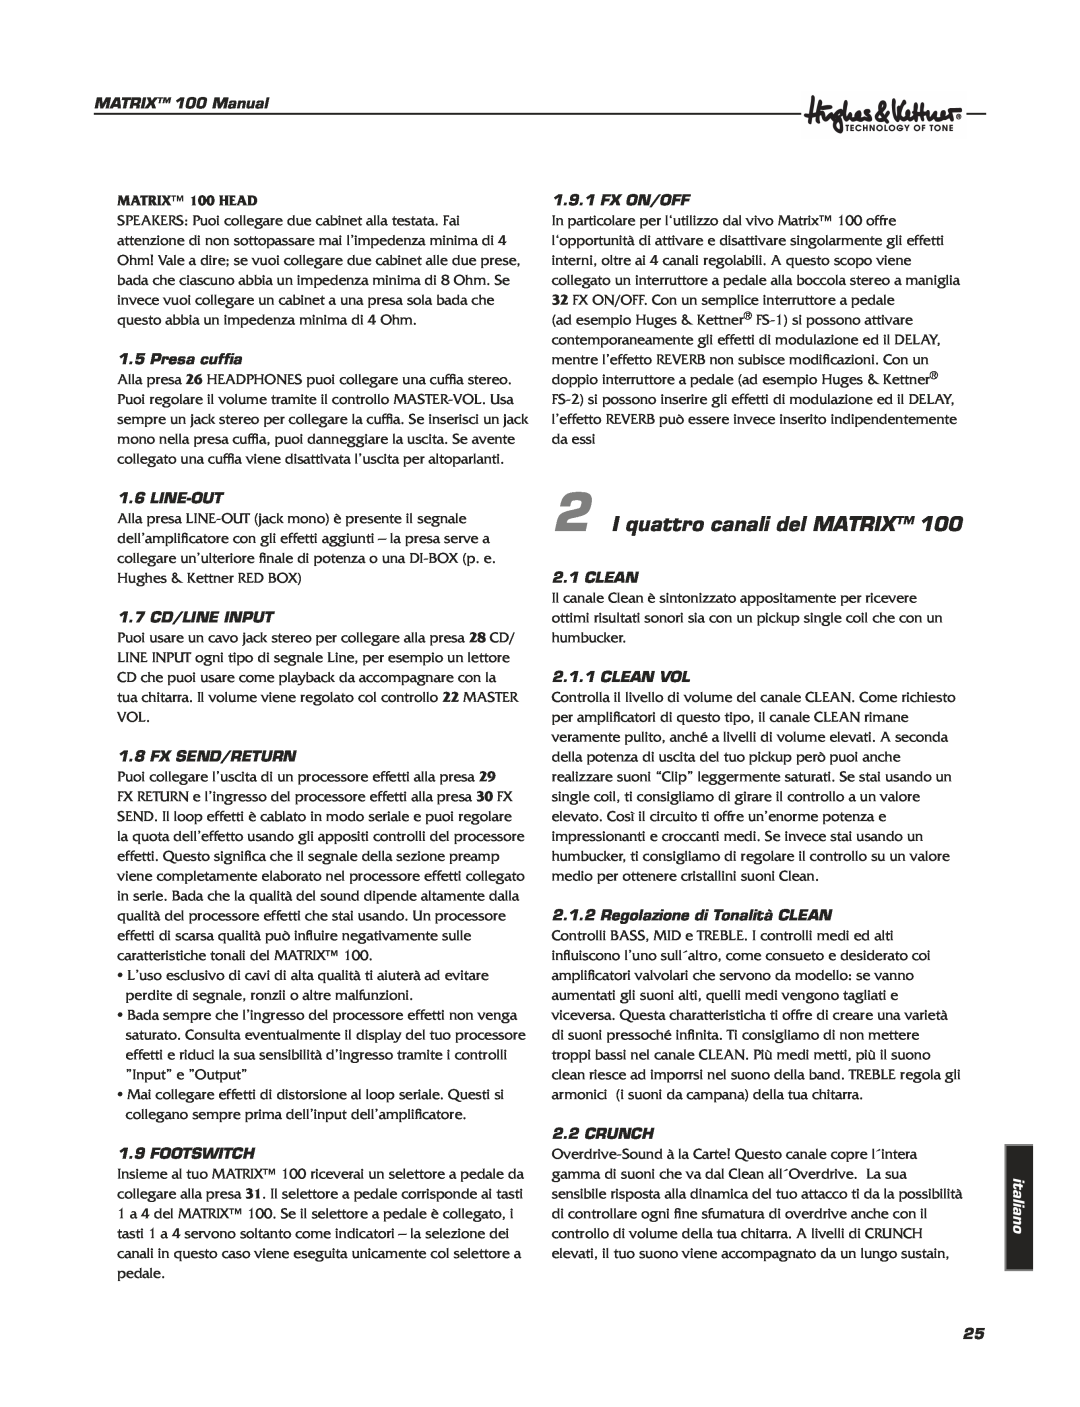 Hughes & Kettner Matrix 100 manual I quattro canali del MATRIX, MATRIX 100 HEAD, italiano 